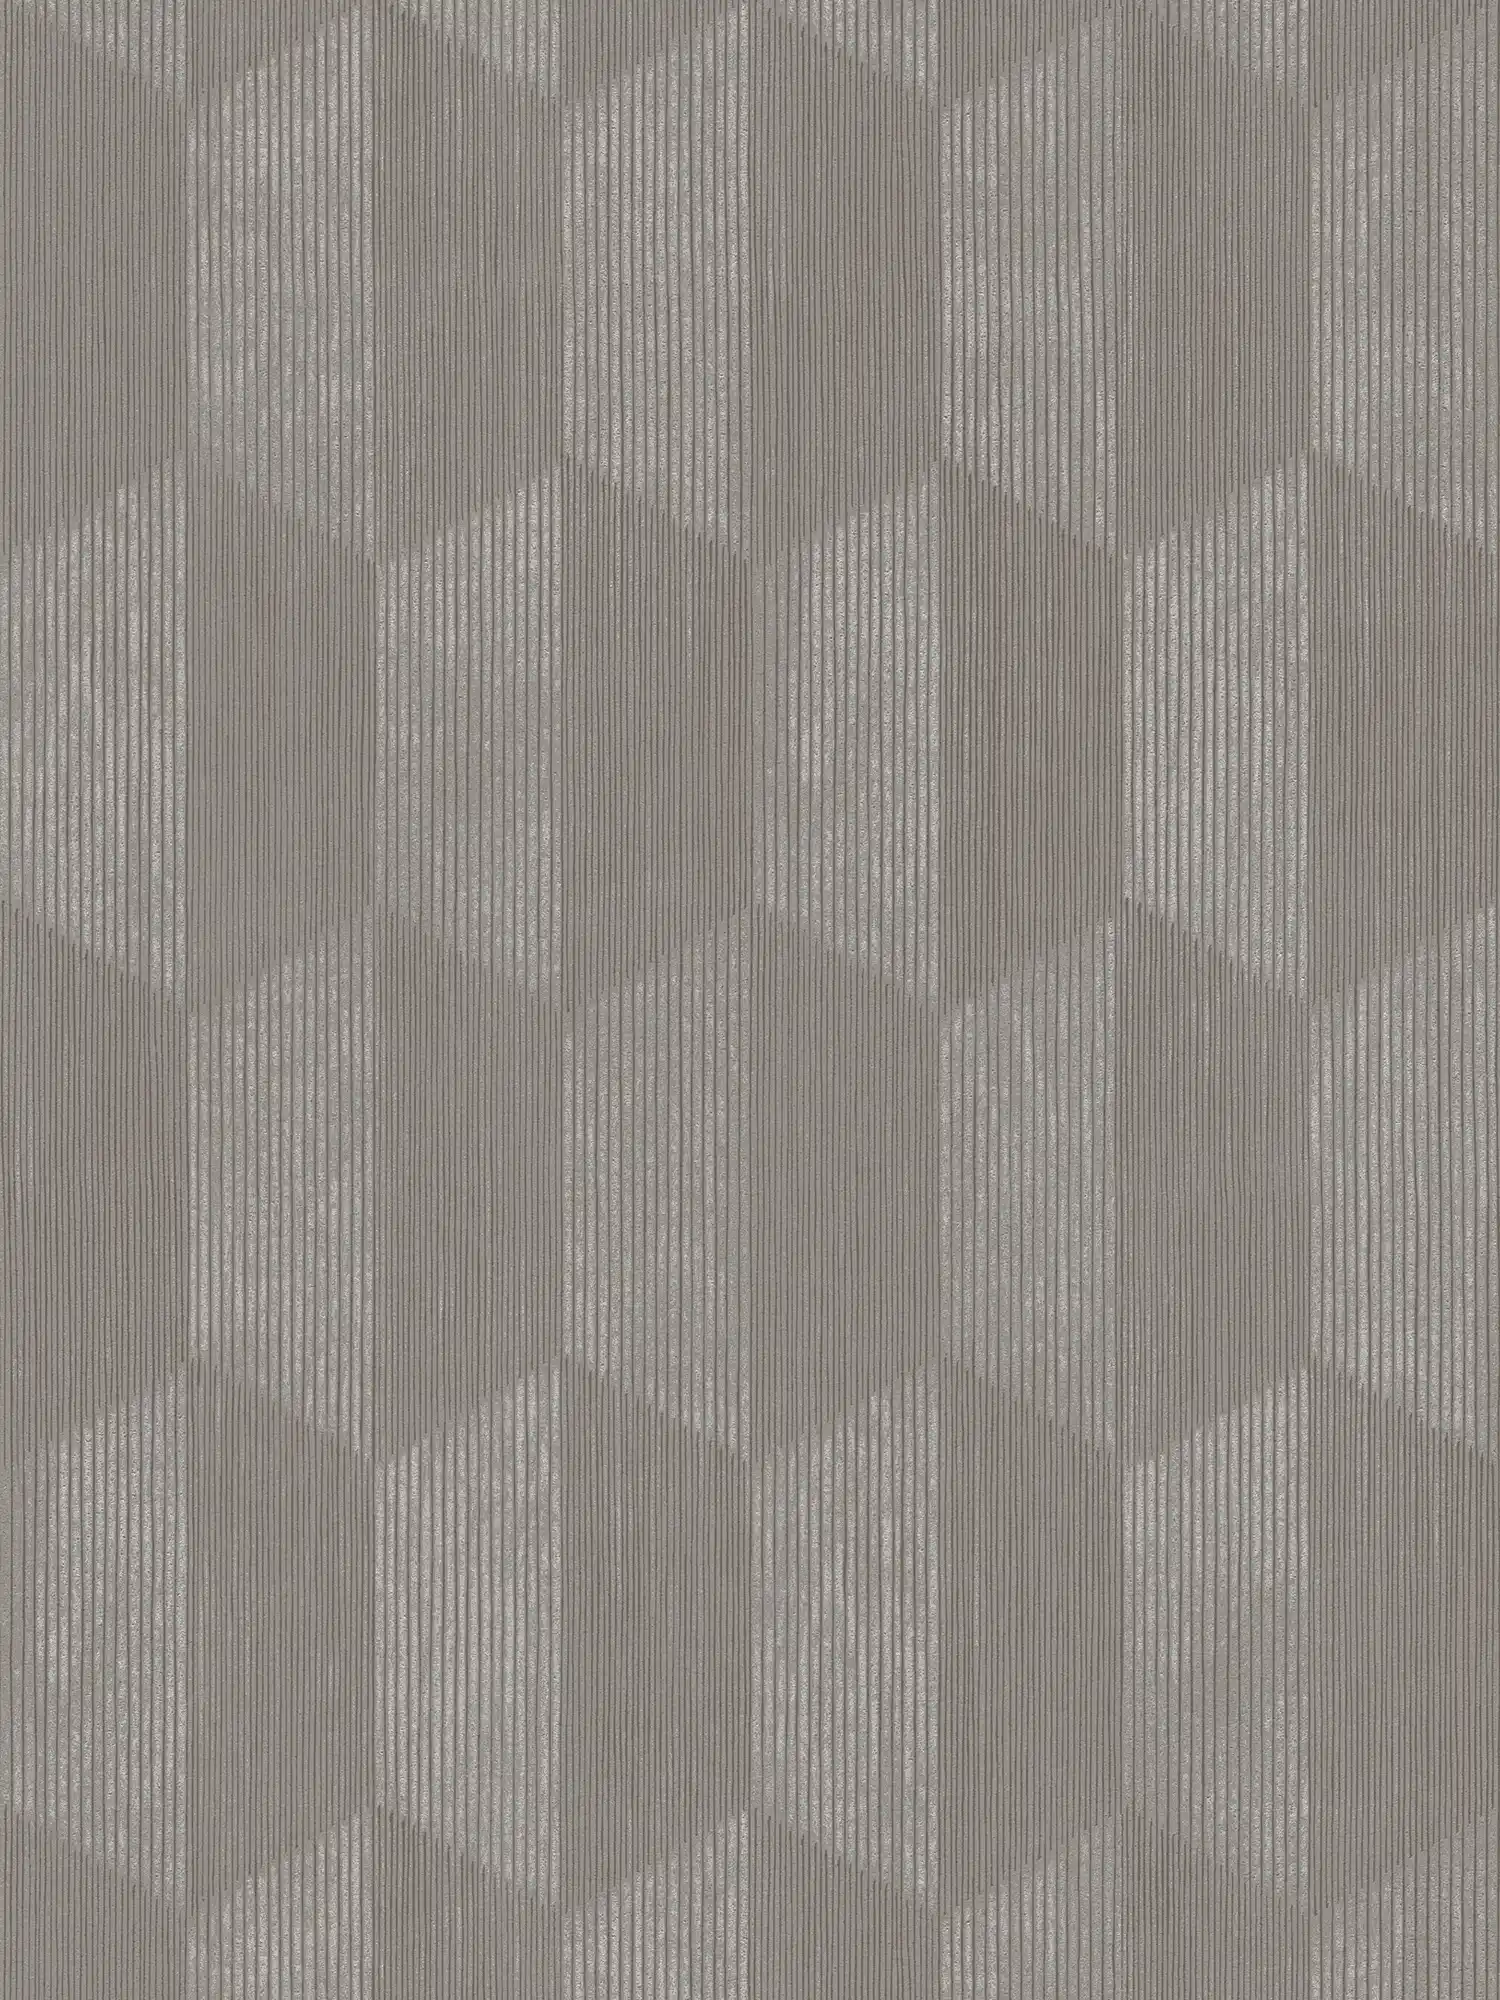 Textuurbehang met 3D grafisch patroon - grijs, beige
